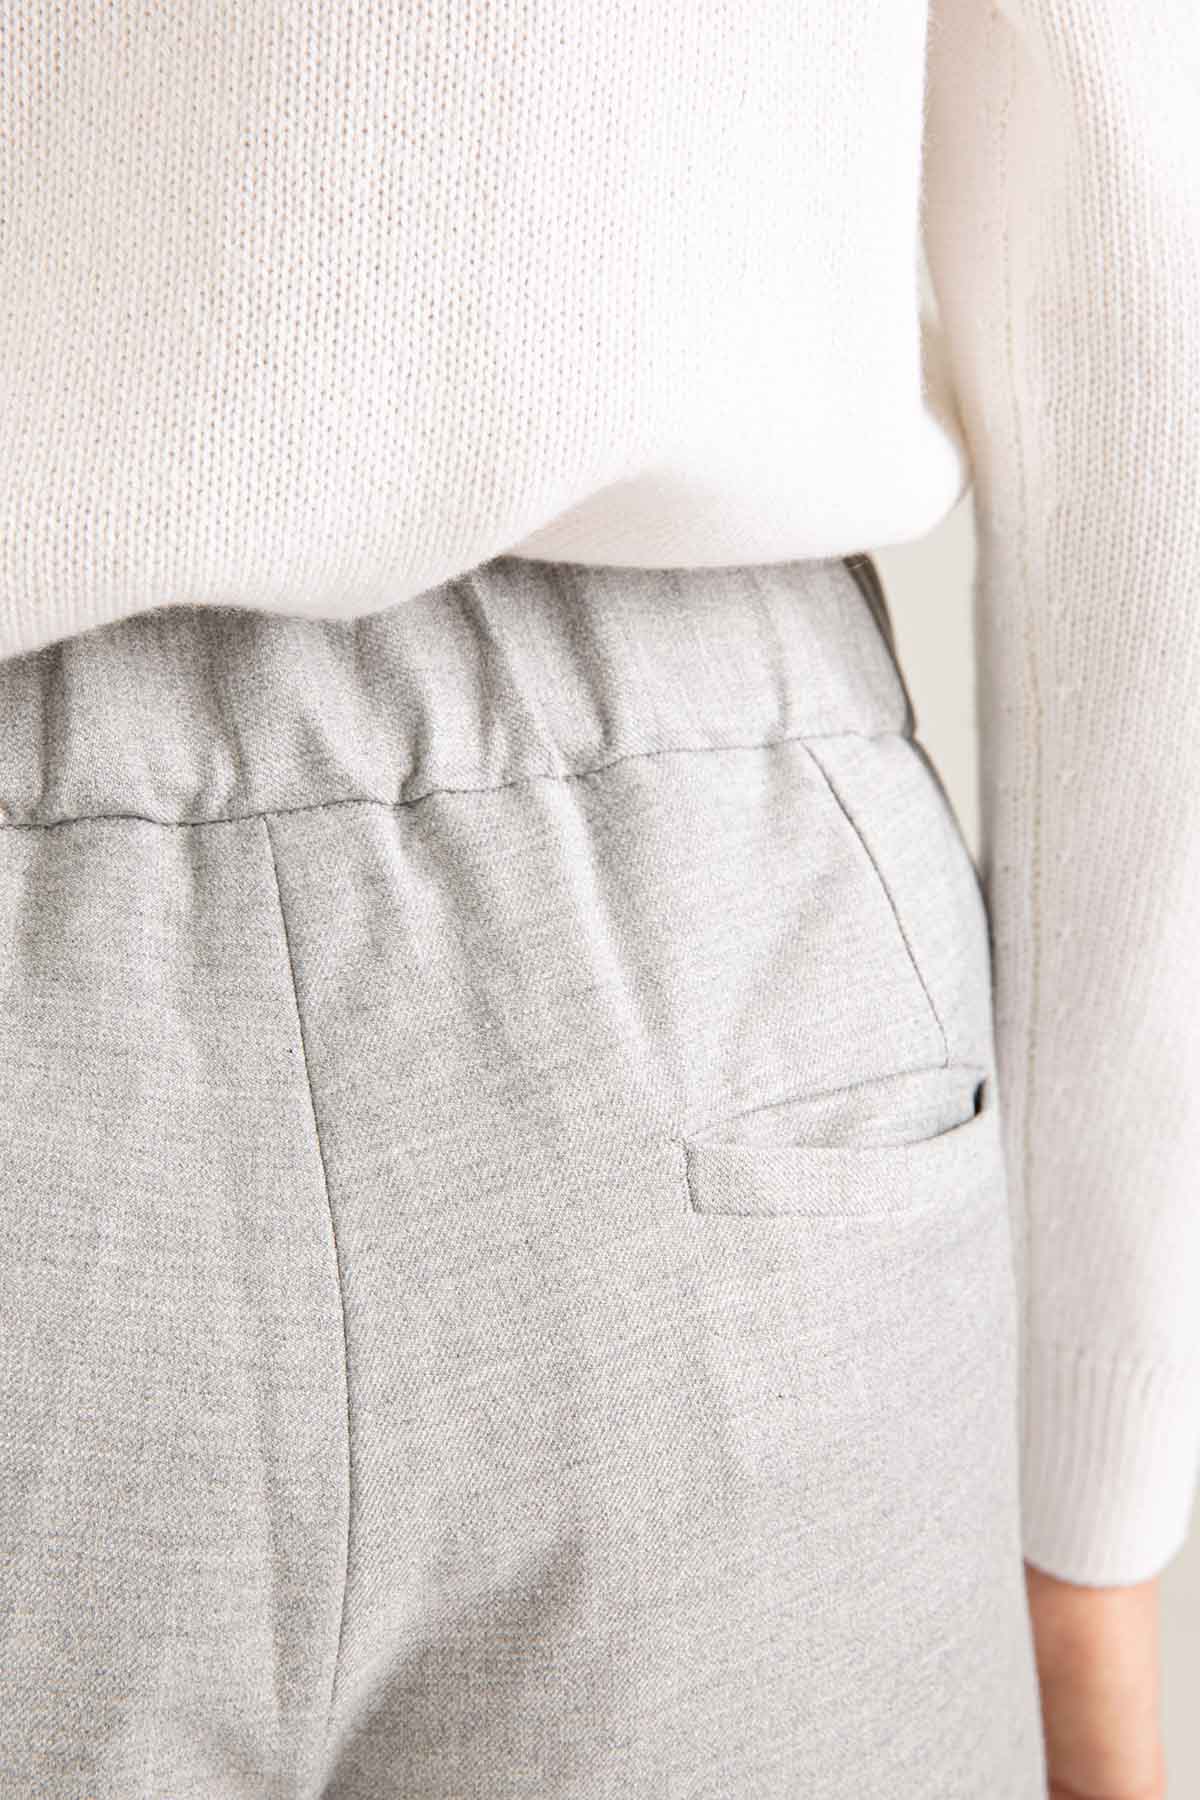 Tonet Duble Paça Streç Yün Pantolon-Libas Trendy Fashion Store